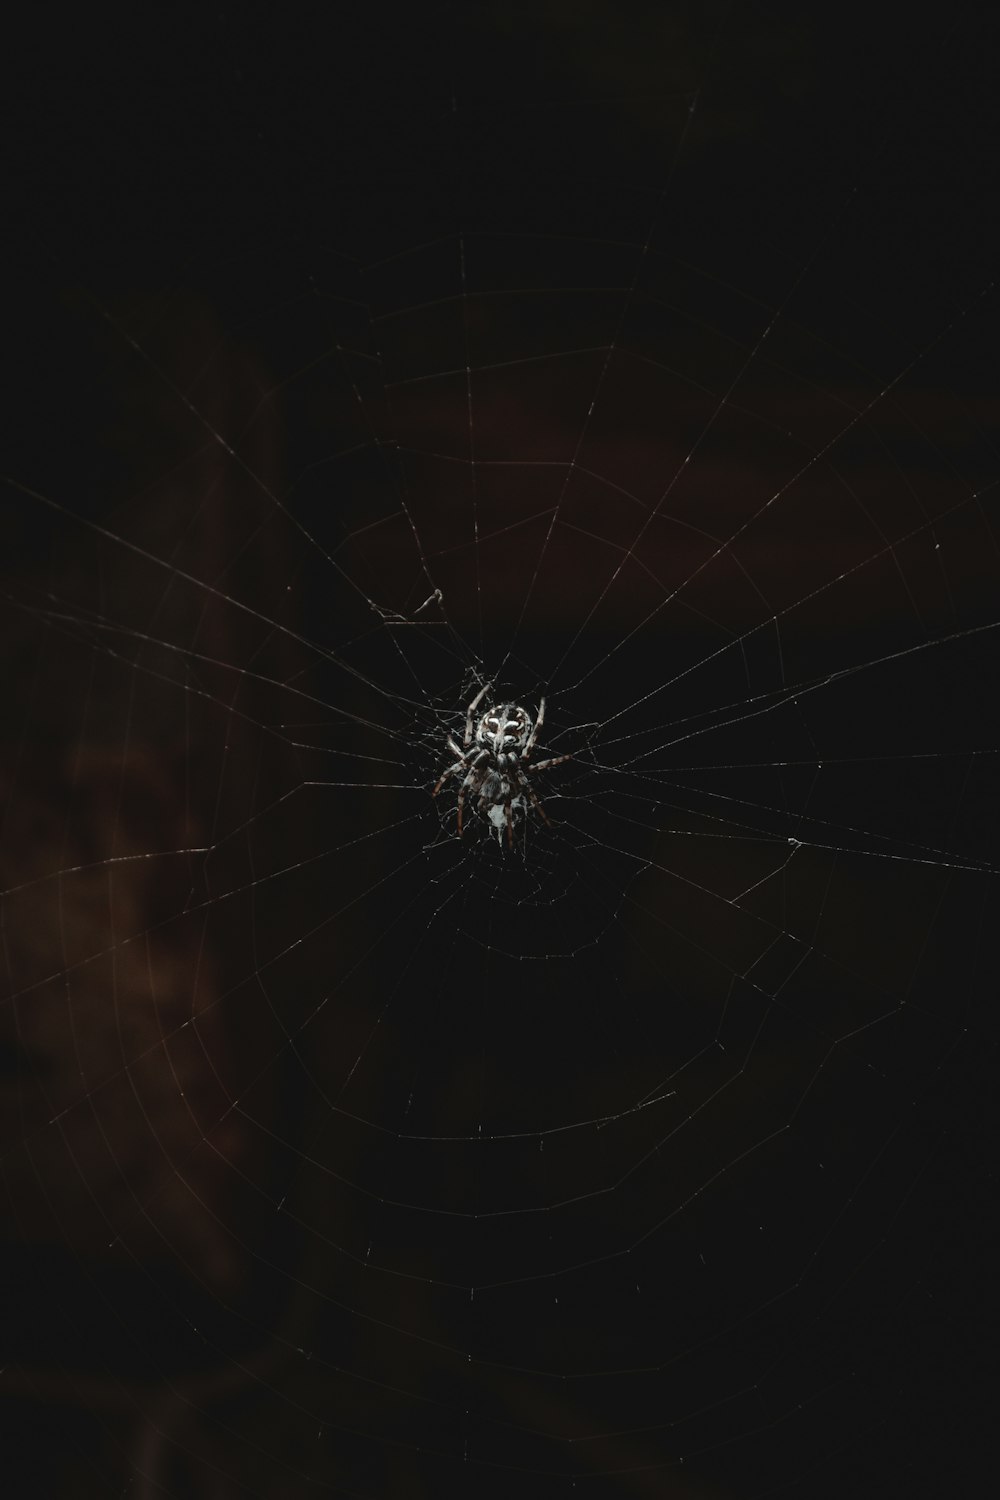 a spider web in the dark with a dark background